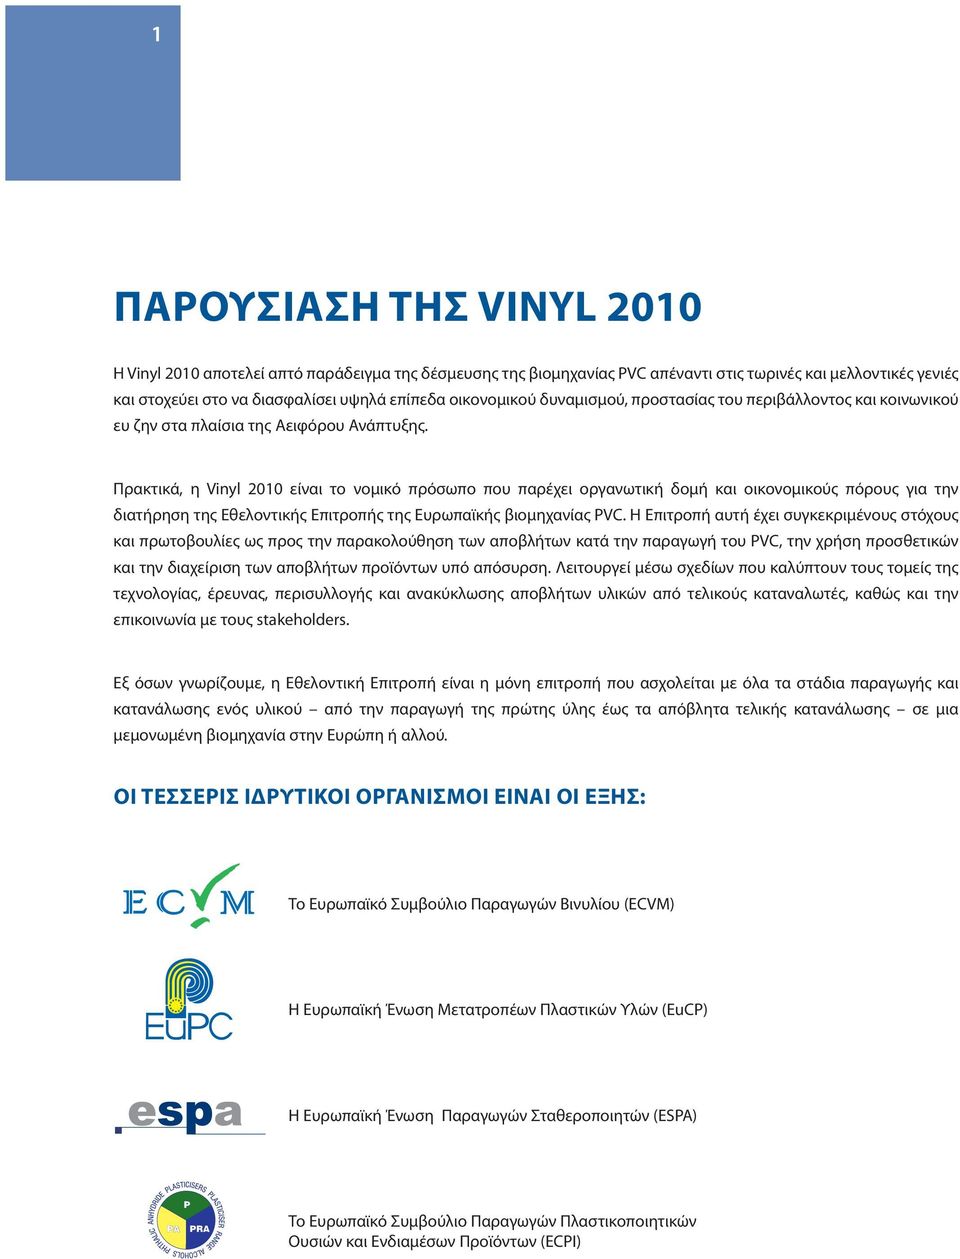 Πρακτικά, η Vinyl 2010 είναι το νομικό πρόσωπο που παρέχει οργανωτική δομή και οικονομικούς πόρους για την διατήρηση της Εθελοντικής Επιτροπής της Ευρωπαϊκής βιομηχανίας PVC.